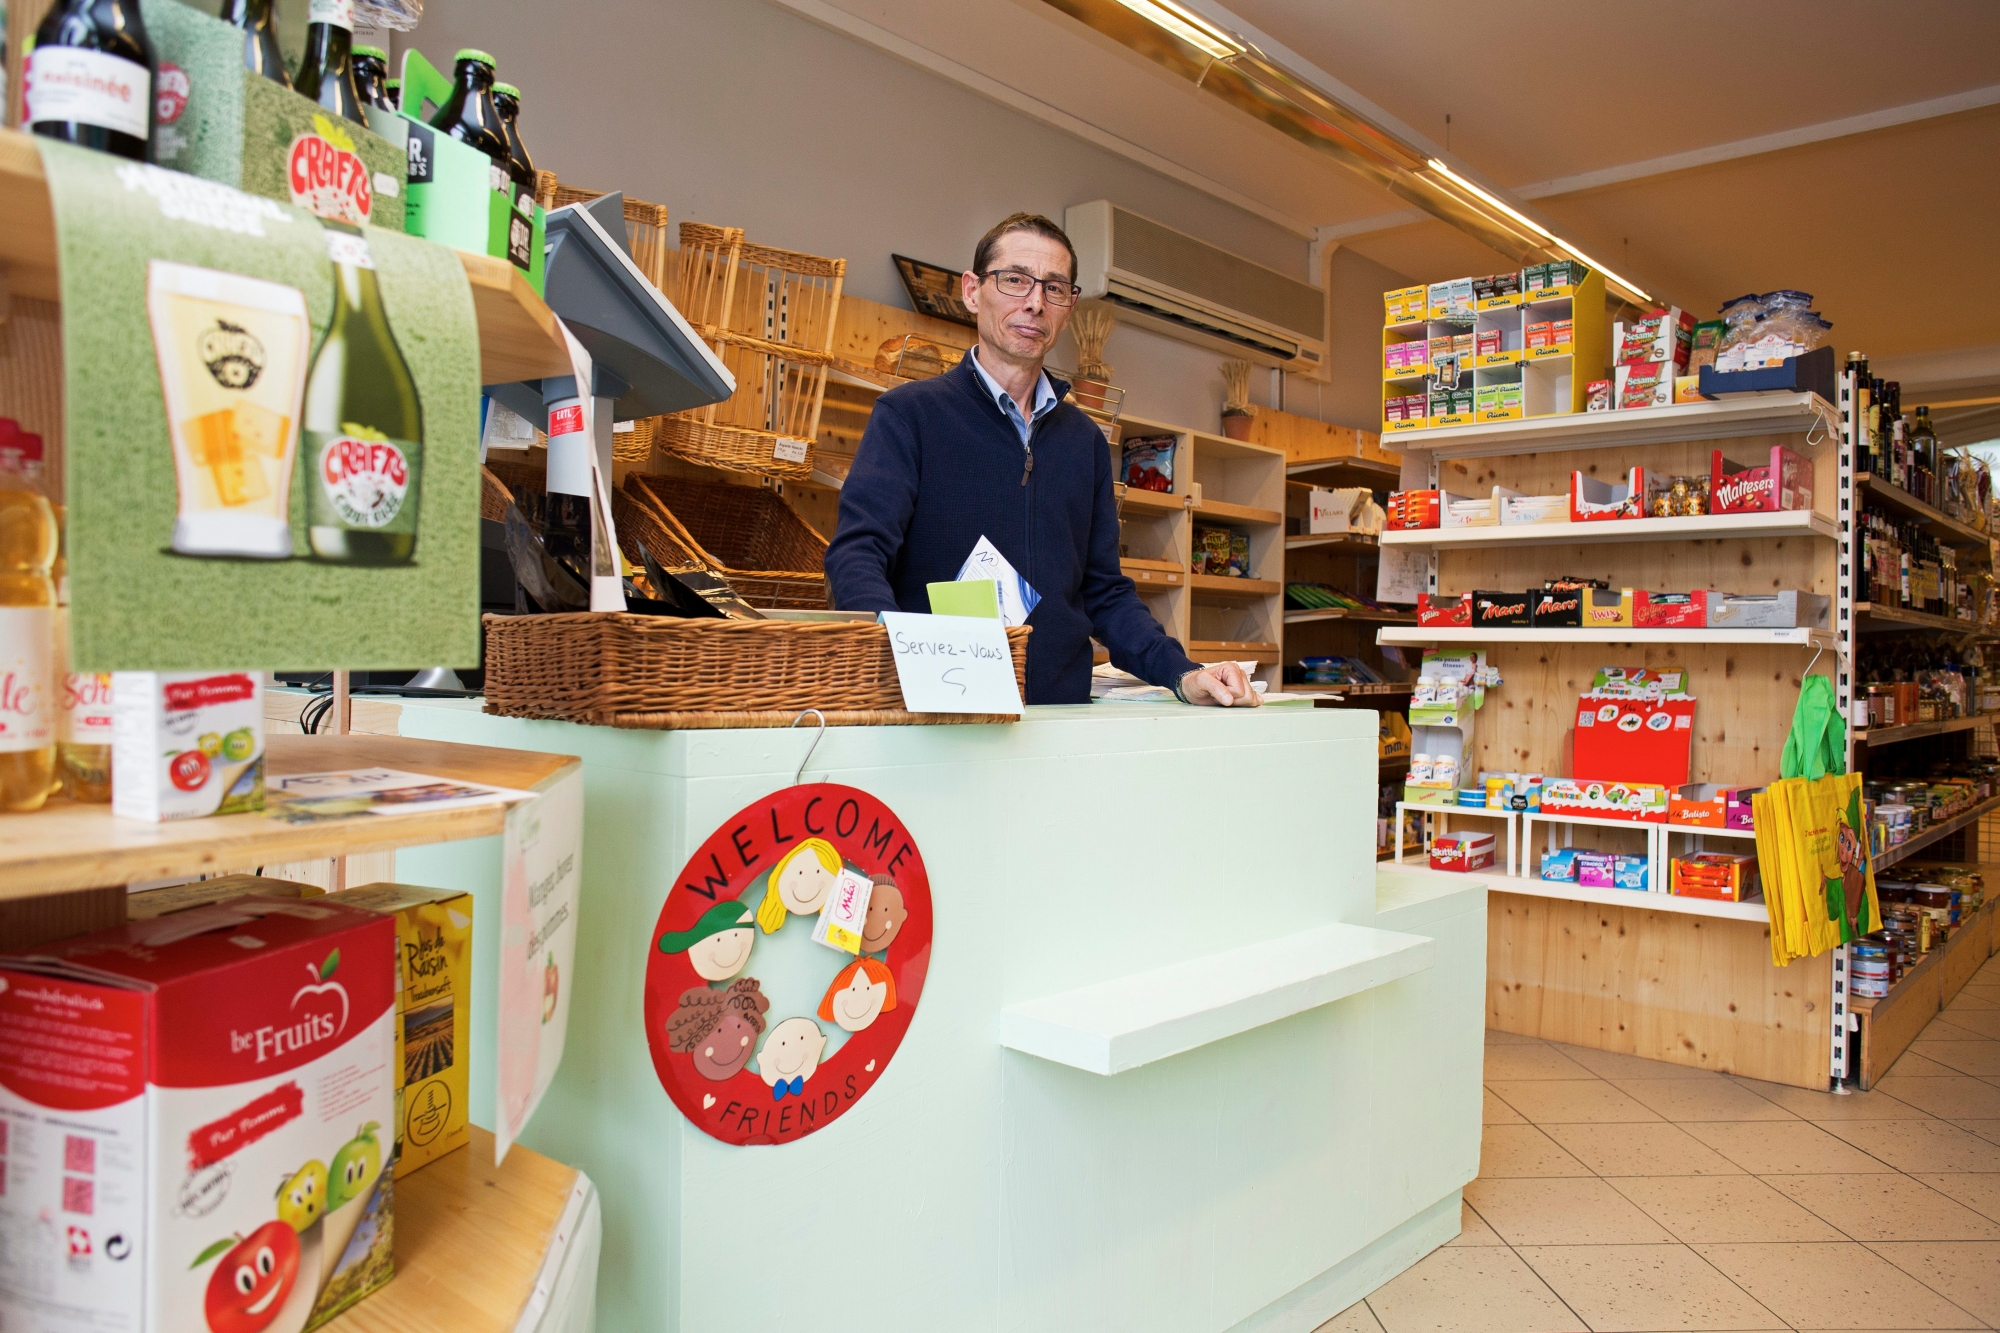 Depuis février 2017, Thierry Brondy a repris l'épicerie anciennement nommée "La Sauge" sur la place de la Saint-Jaques, à Etoy. Il l'a rebaptisée "L'Echoppe", le marché des villageois.
Vendredi 19 mai 2017, Etoy. Portrait de Thierry Brondy dans son épicerie à Etoy